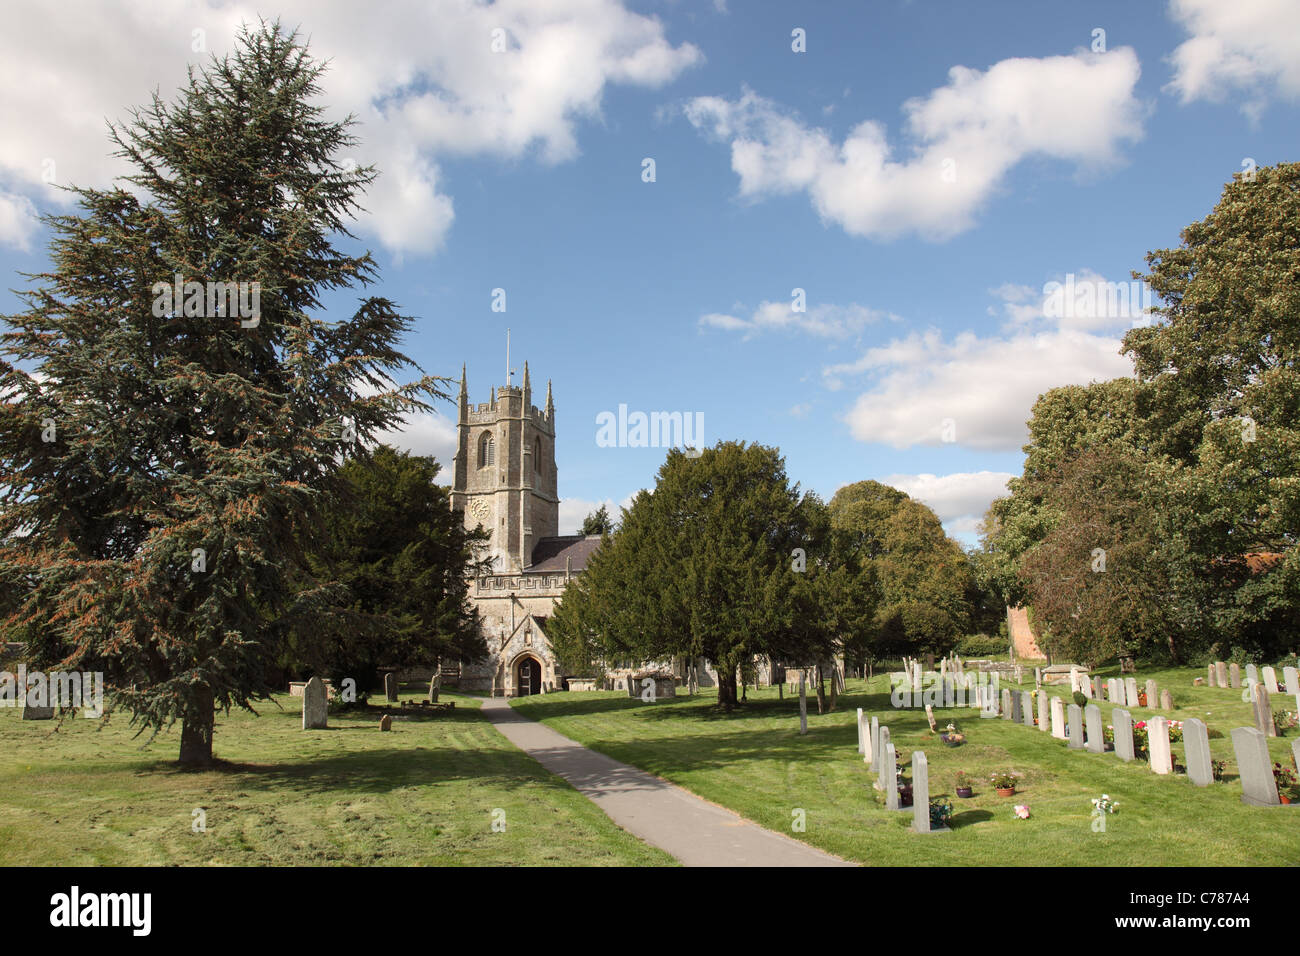 The church of Avebury St James, Avebury, Wiltshire, England, UK Stock Photo